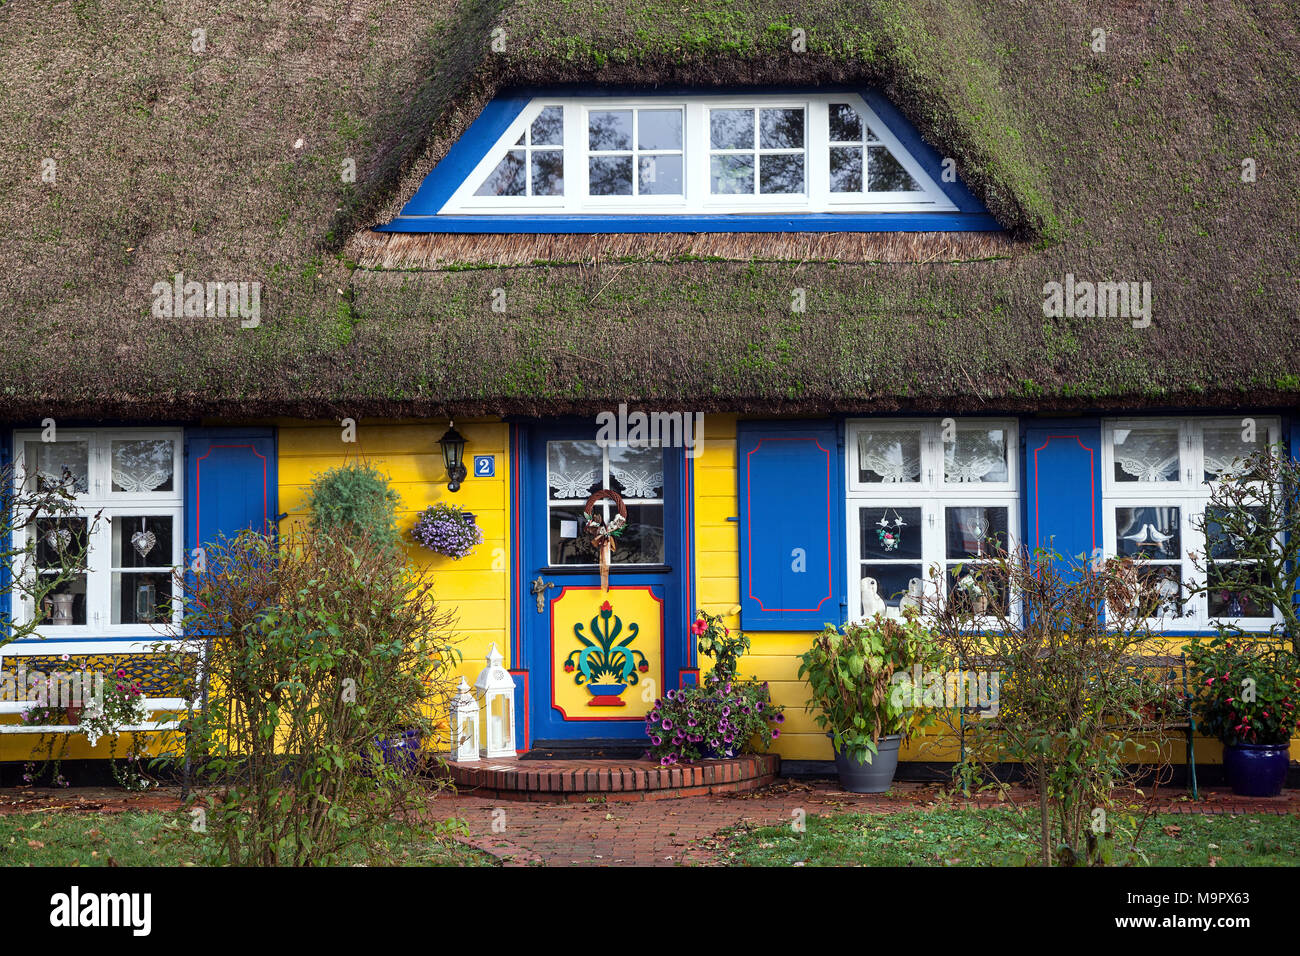 Tipici giallo con tetto di paglia house, nato am Darß, Fischland-Darß-Zingst, Meclenburgo-Pomerania Occidentale, Germania Foto Stock